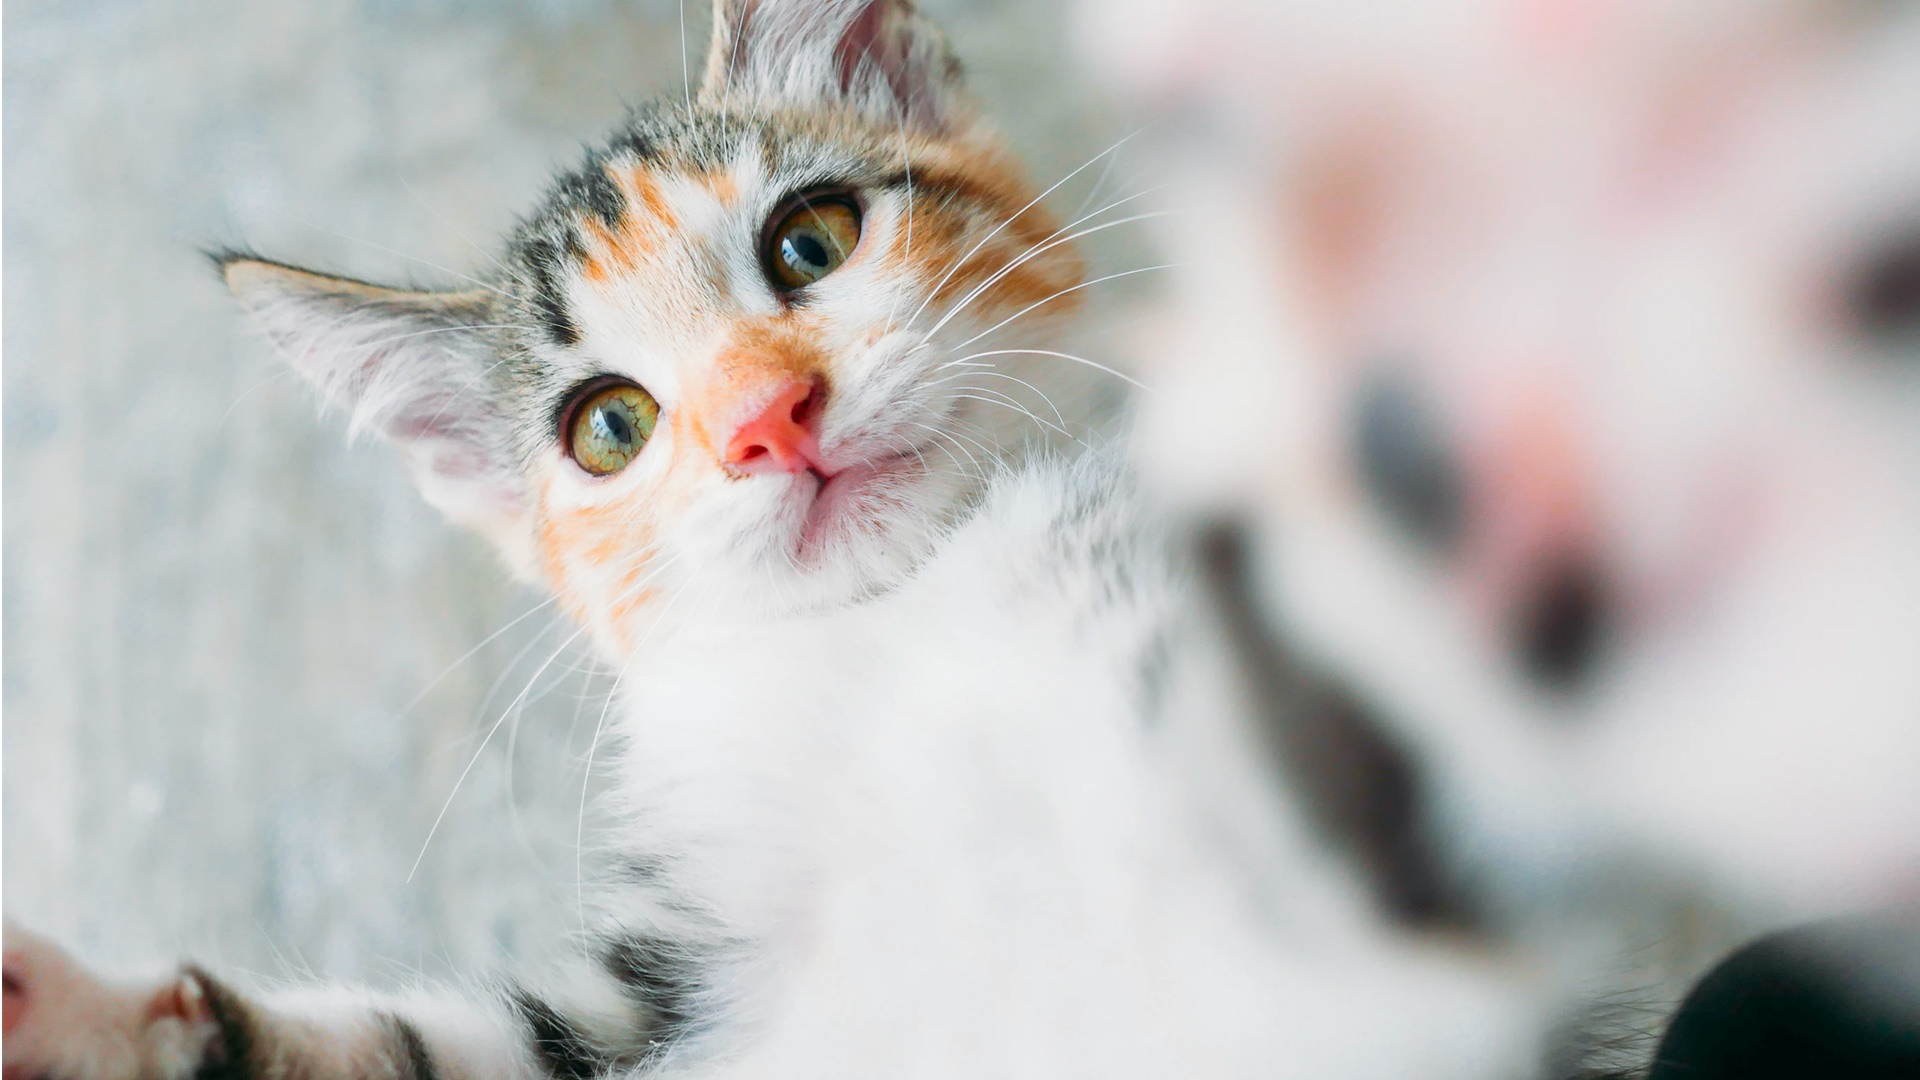 Grâce à cette appli, prendre votre chat en photo veut aussi dire prendre soin de sa santé